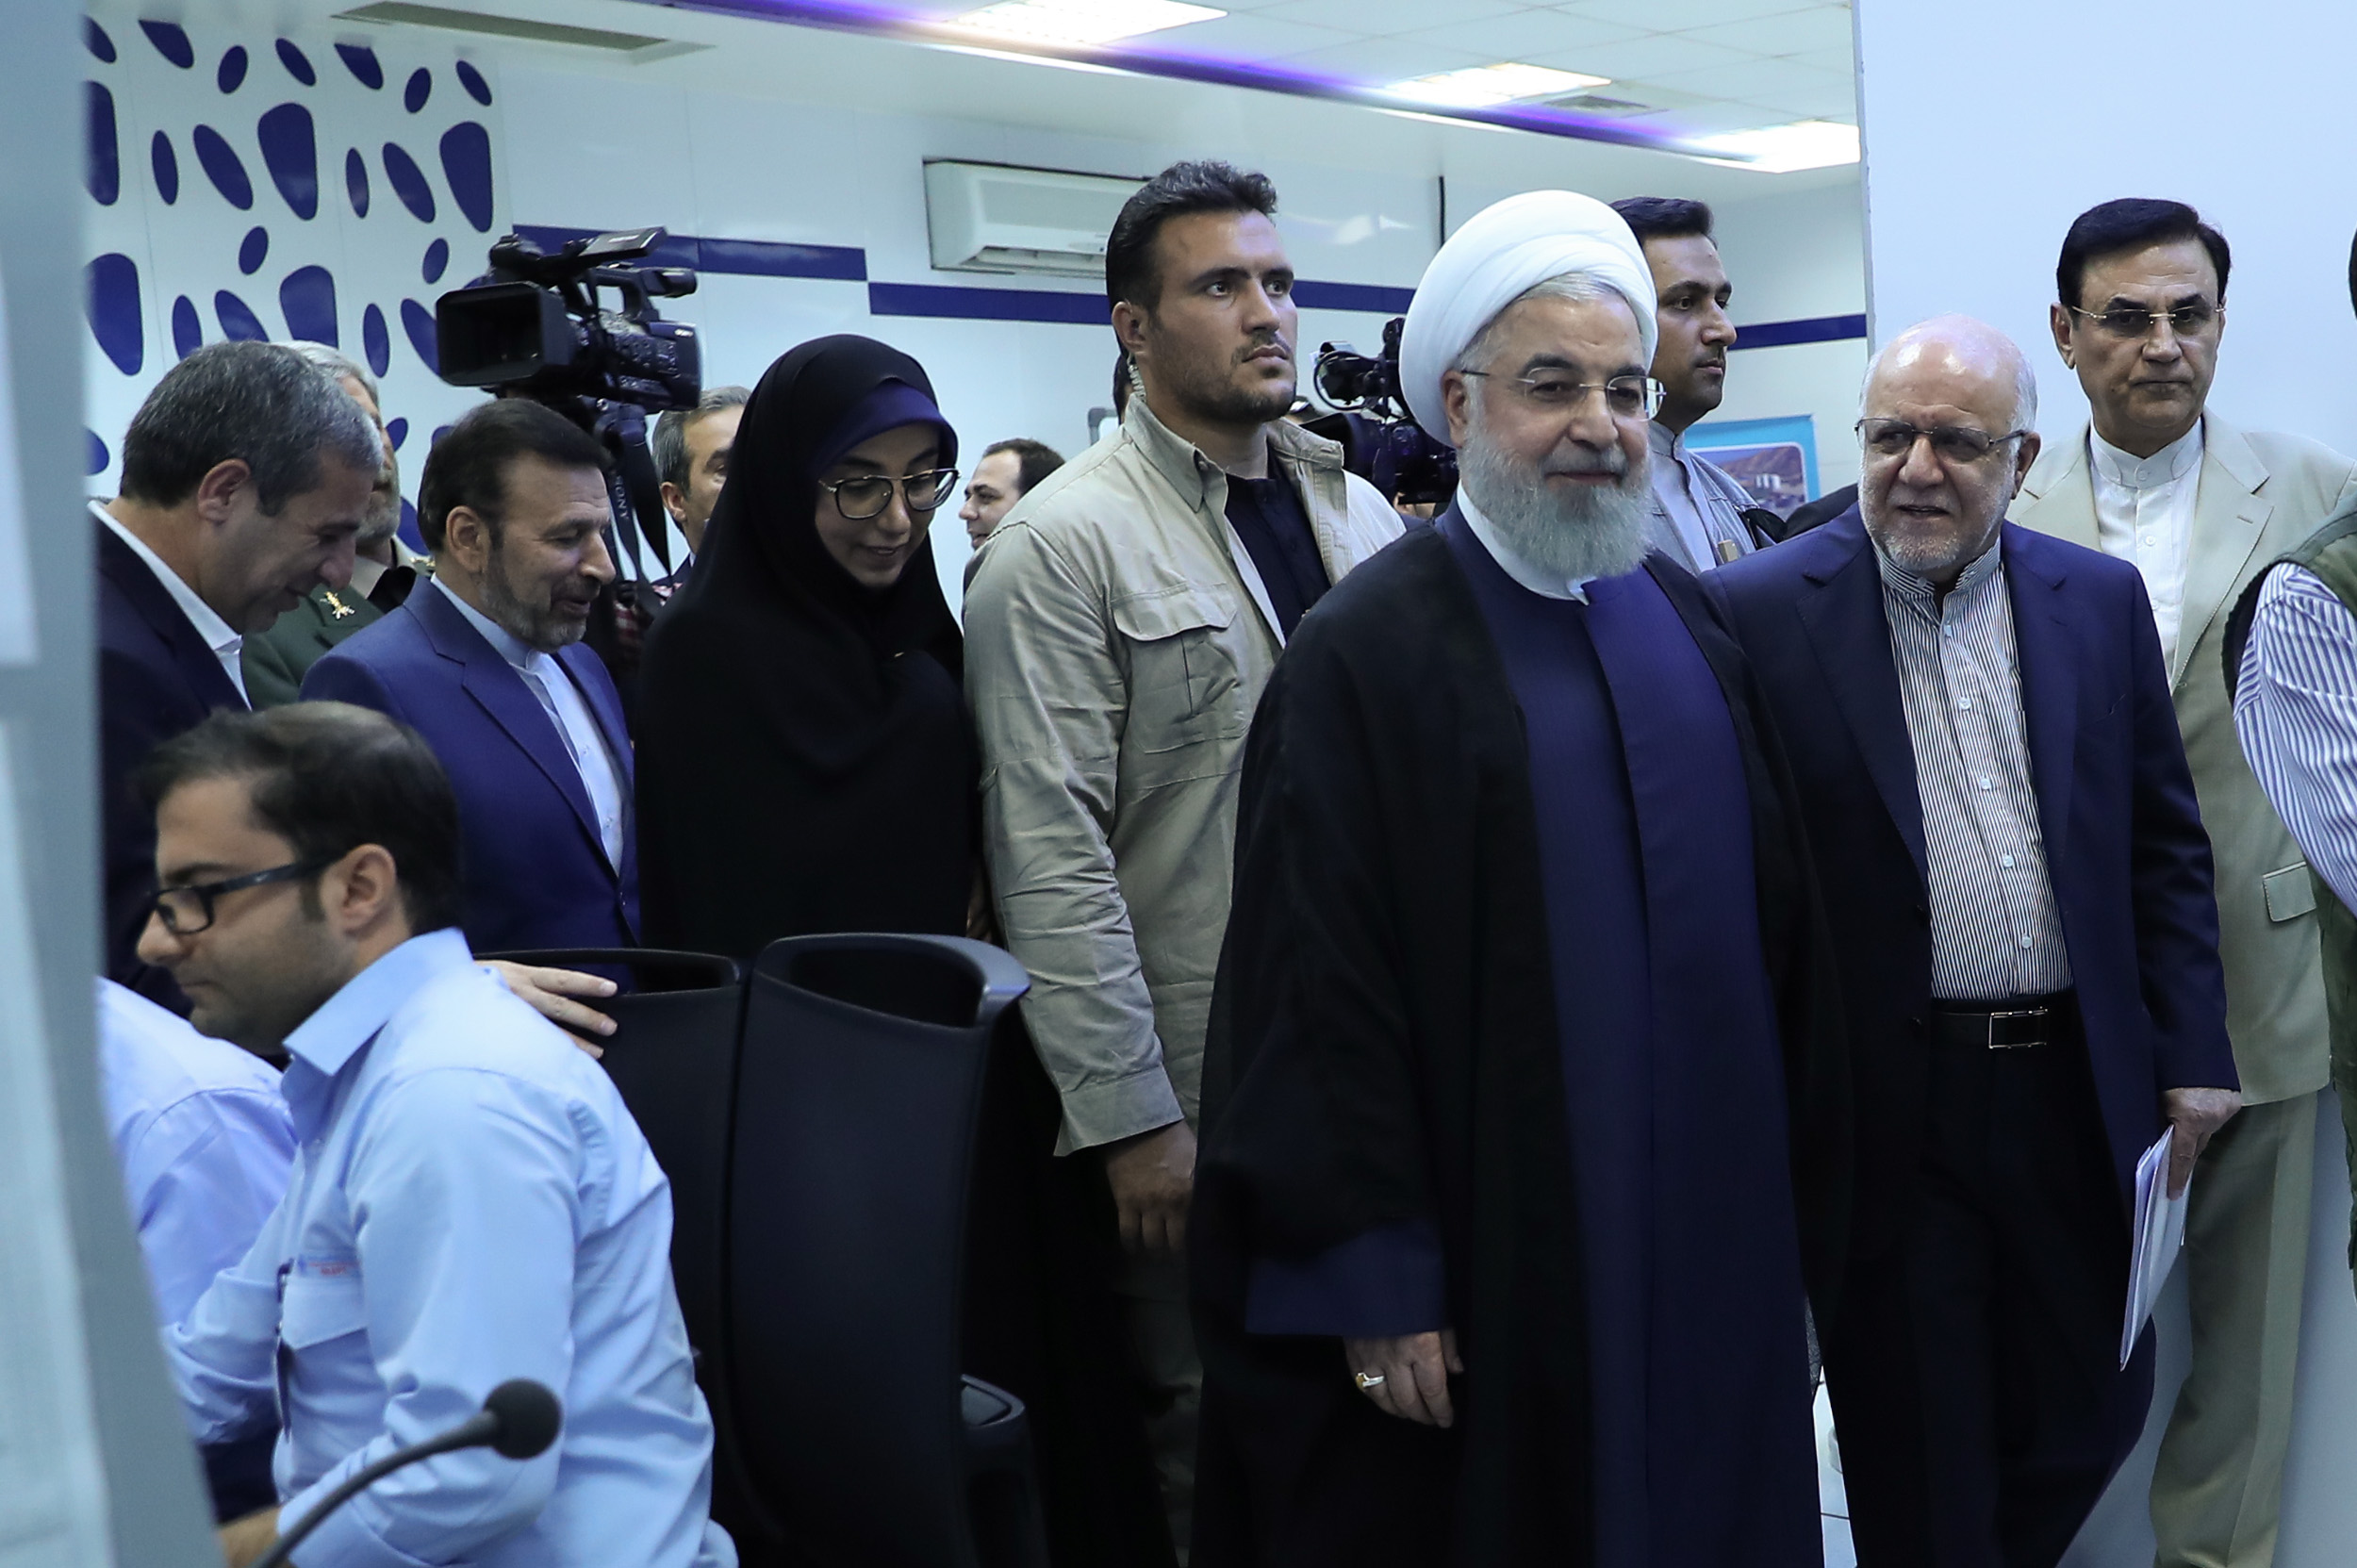 روحانی: تلاشگران صنعت نفت امروز گام بلندی در مسیر عزت ایران، تولید و اشتغال برداشتند/ دشمنان قادر به توقف ملت ایران در مسیر پیشرفت نیستند 